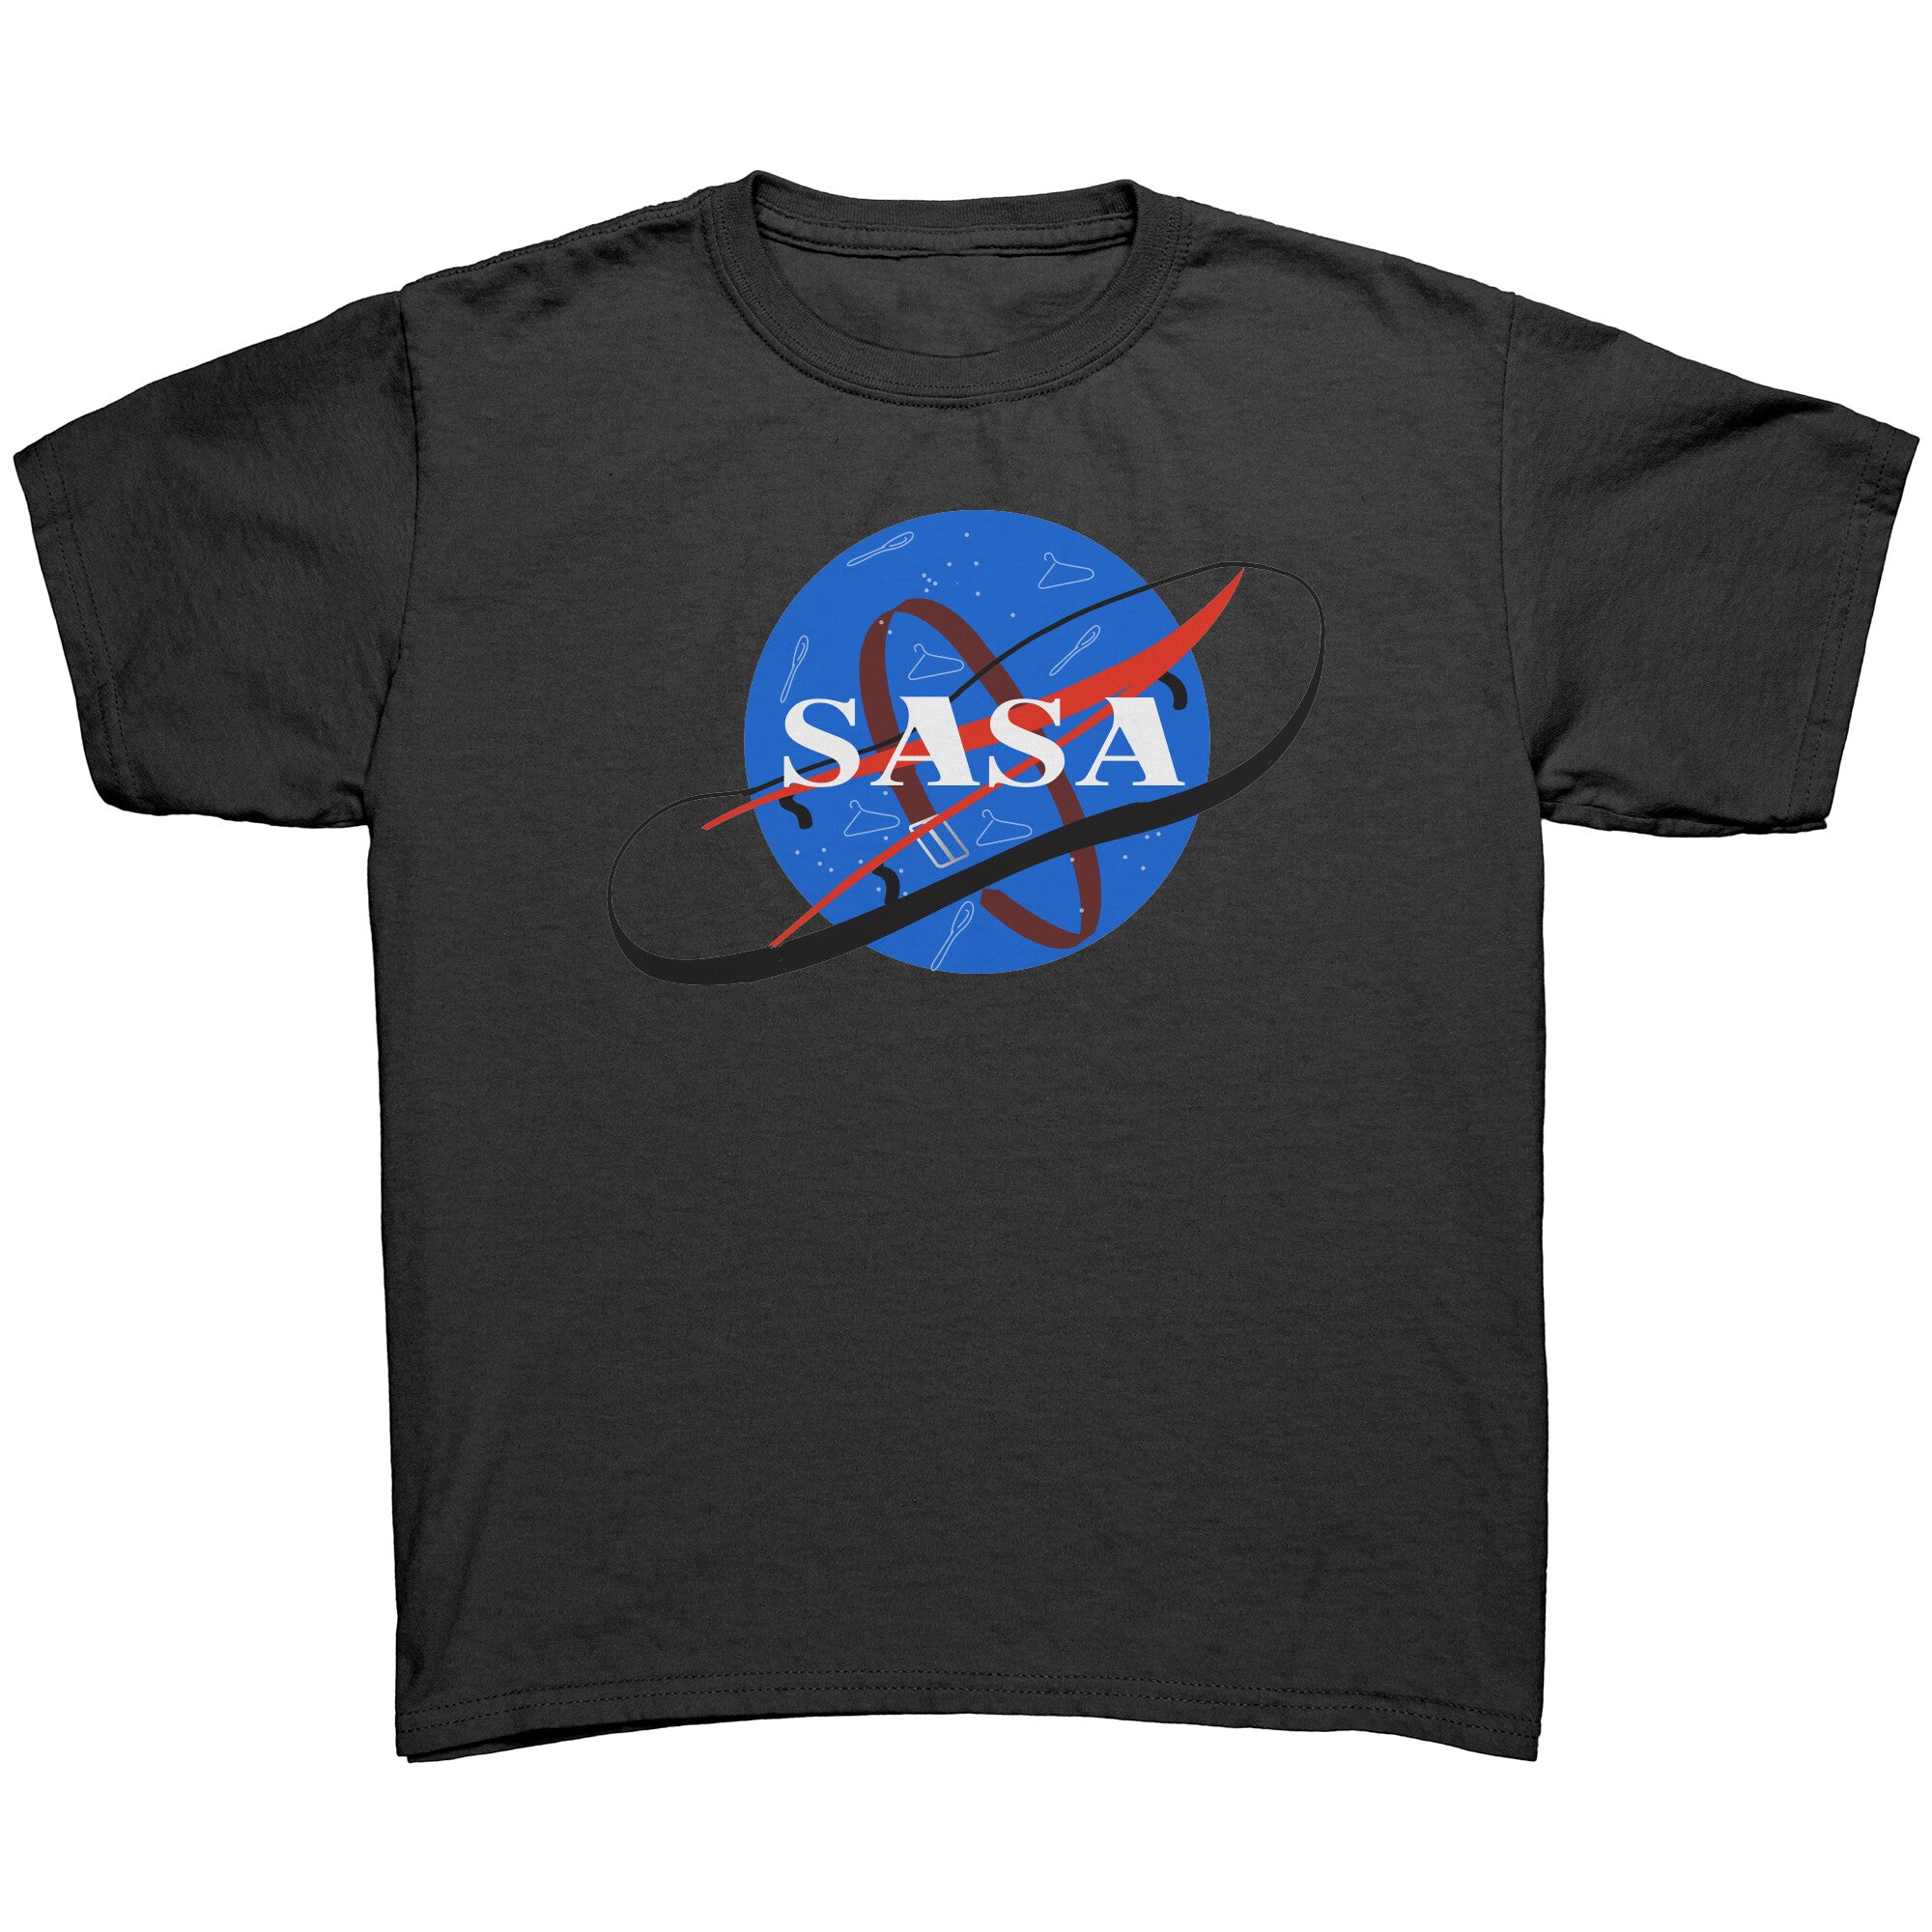 SASA Youth T Shirt